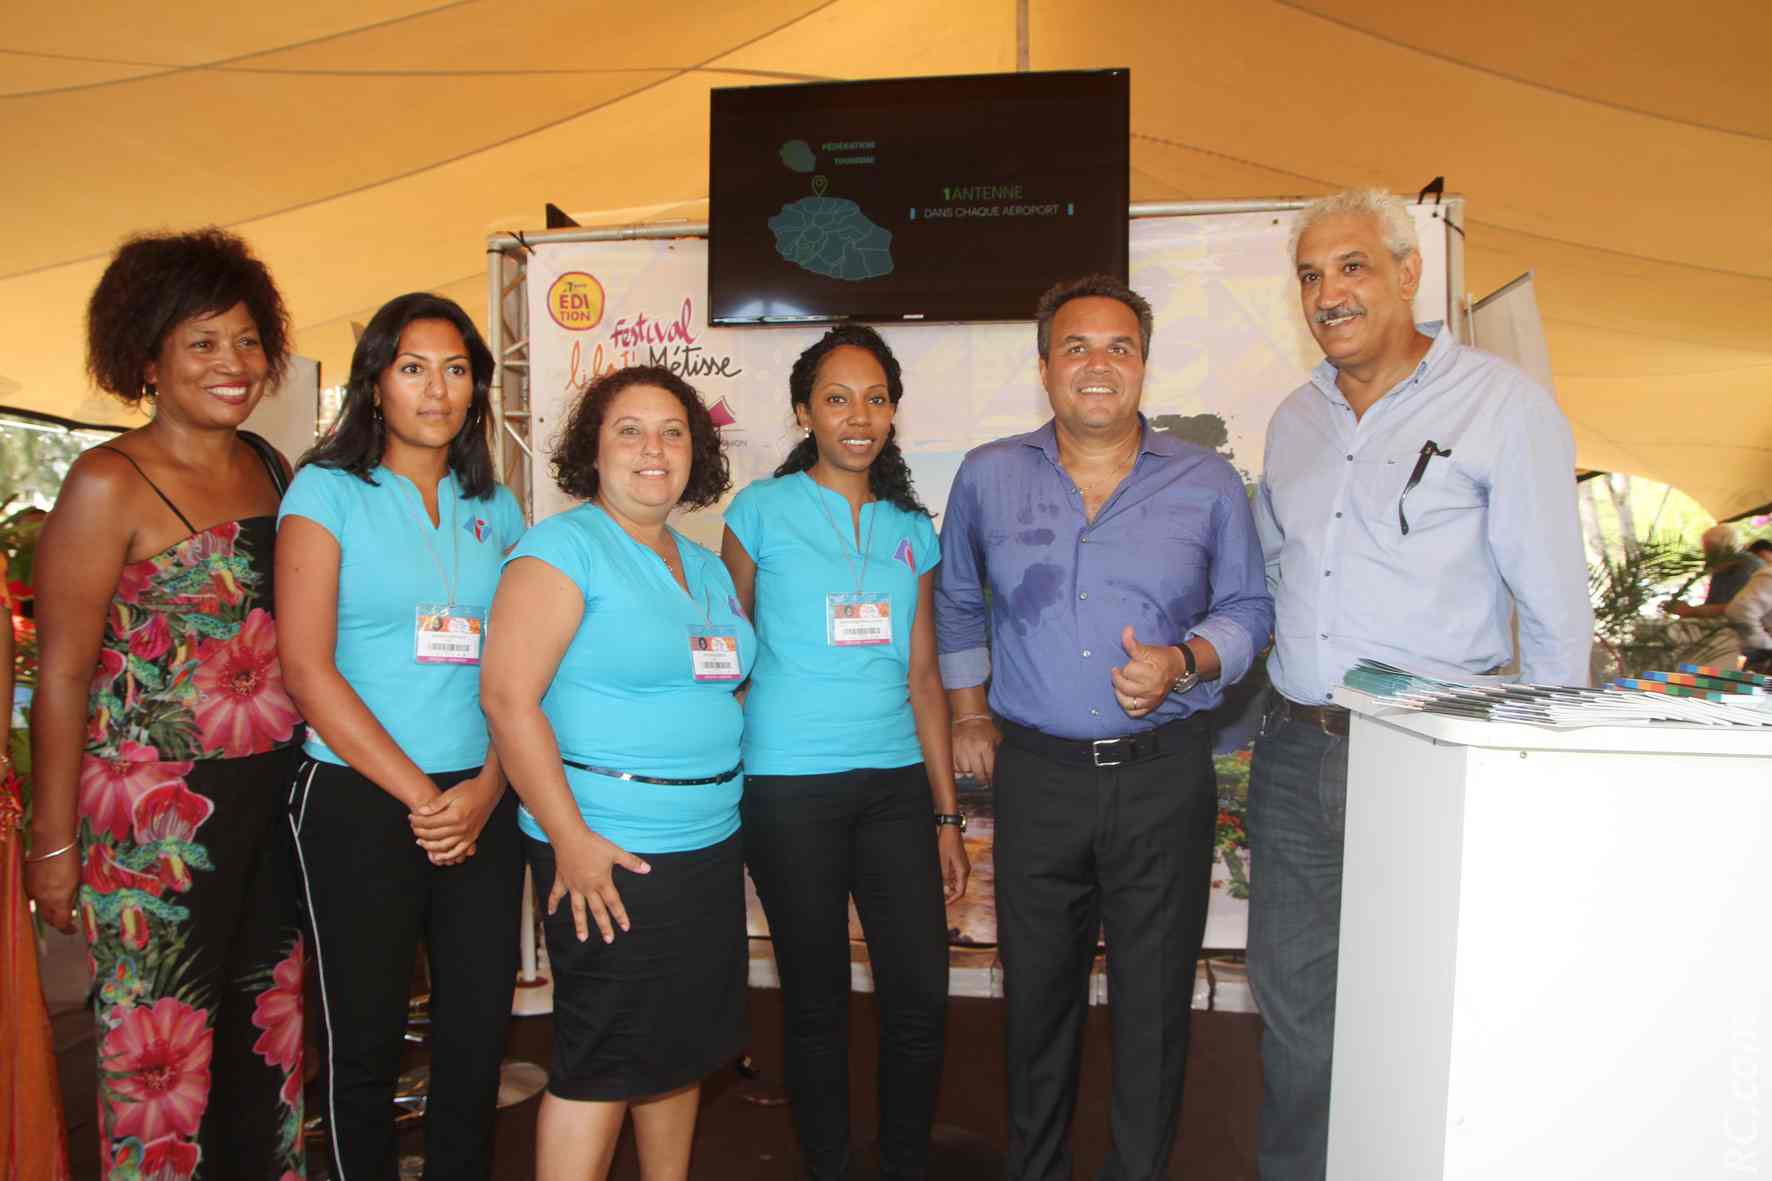 Le Président Didier Robert accueilli au stand de la Fédération de Tourisme de la Réunion, par le président Azédine Bouali et son équipe